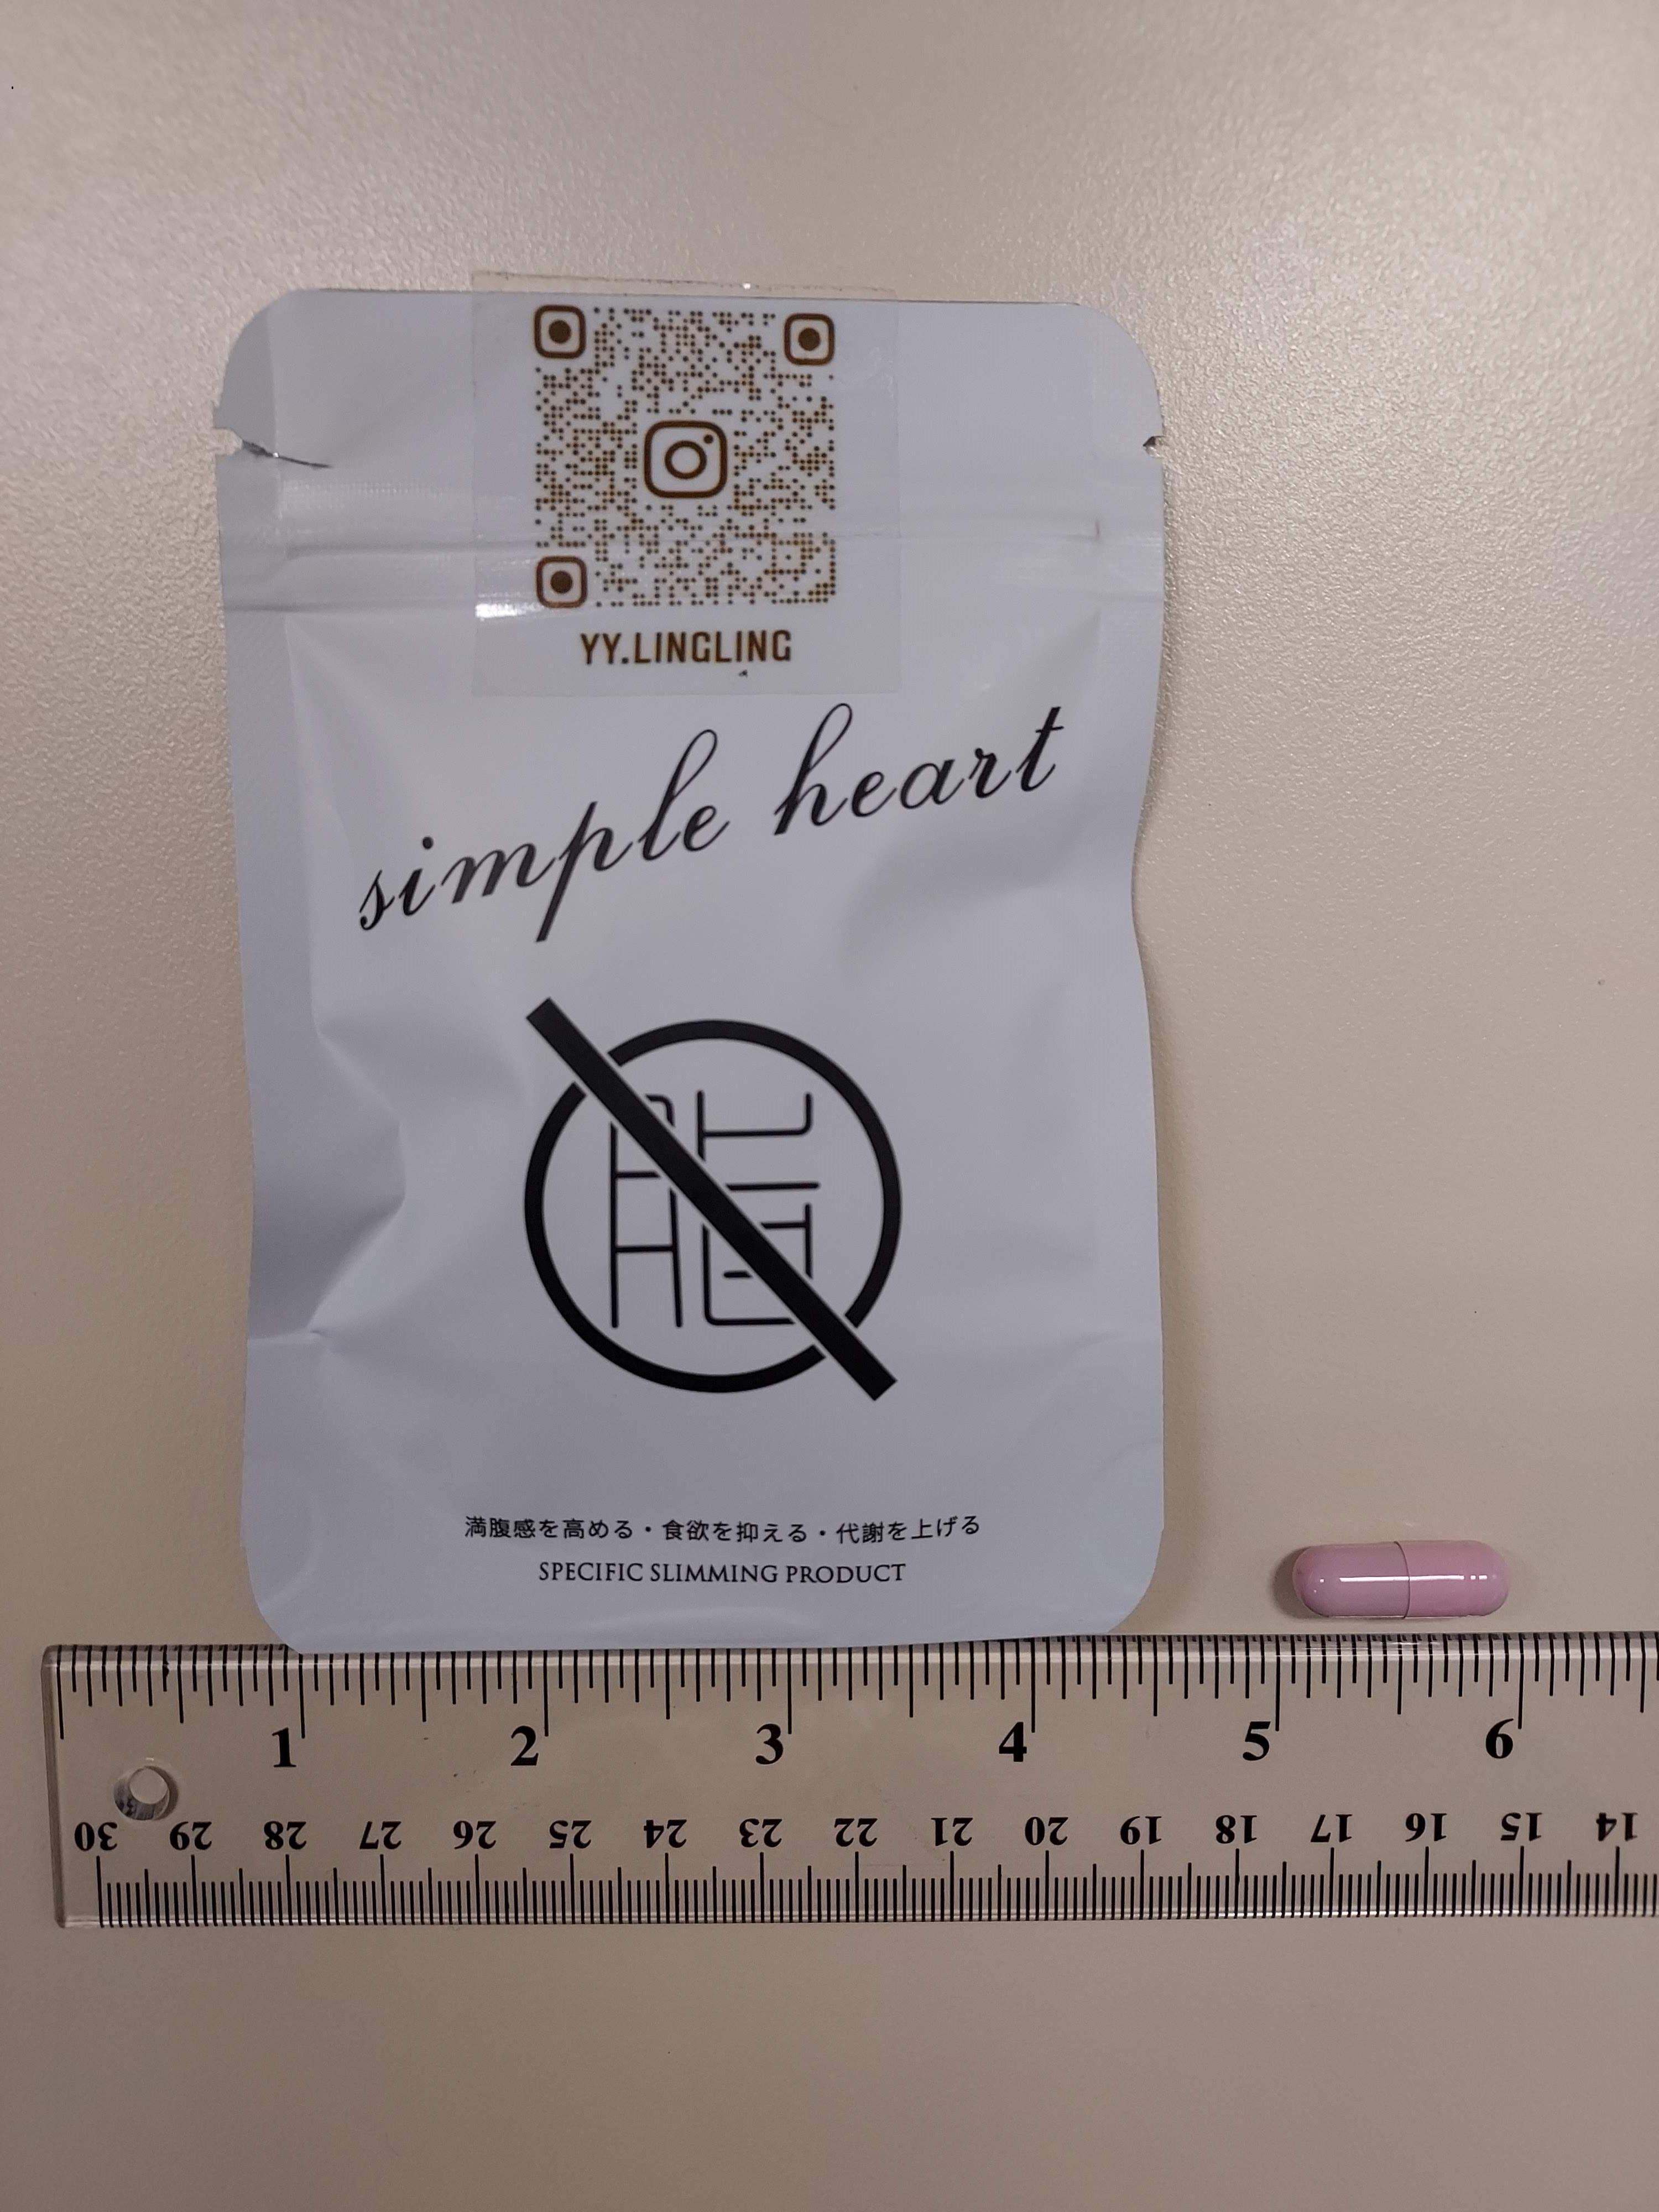 衞生署今日（十二月八日）呼籲市民切勿購買或服用一款名為「simple heart SPECIFIC SLIMMING PRODUCT」的減肥產品，因為該款產品被發現含有未標示受管制及已禁用藥物成分。圖為上述產品。